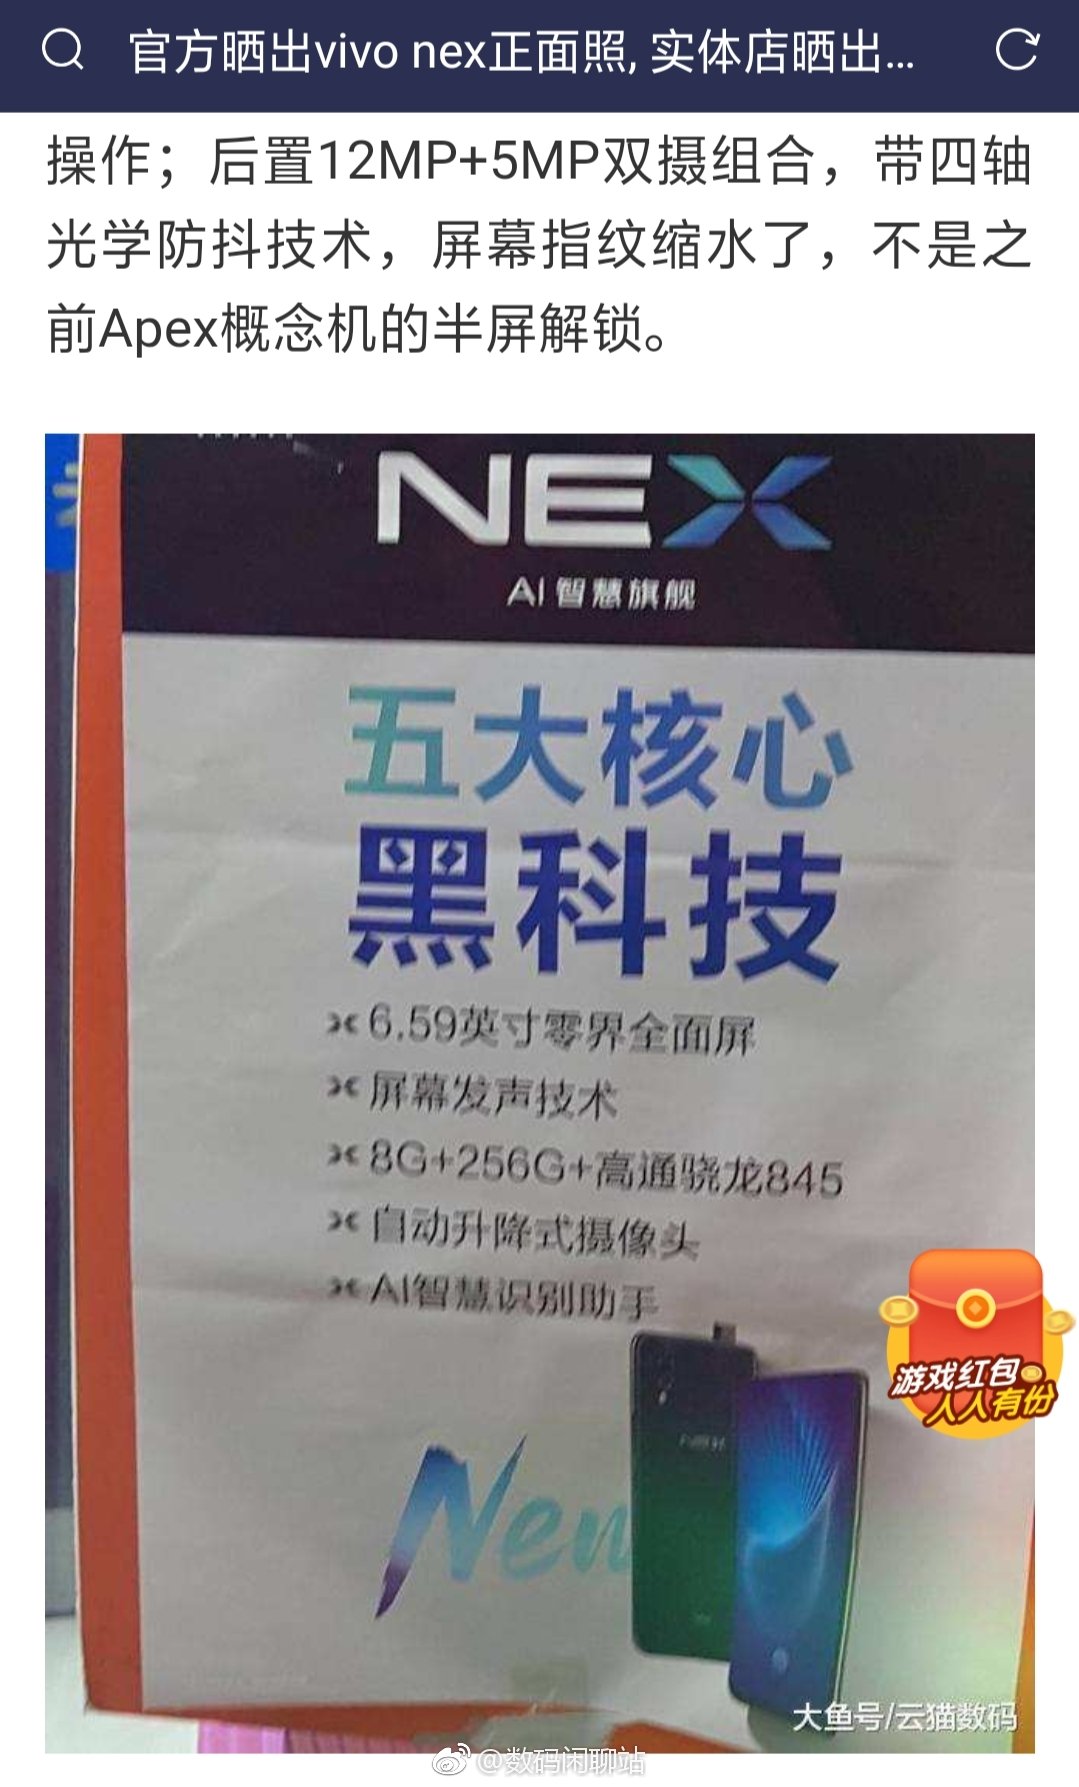 Vivo NEX S 256GB Model